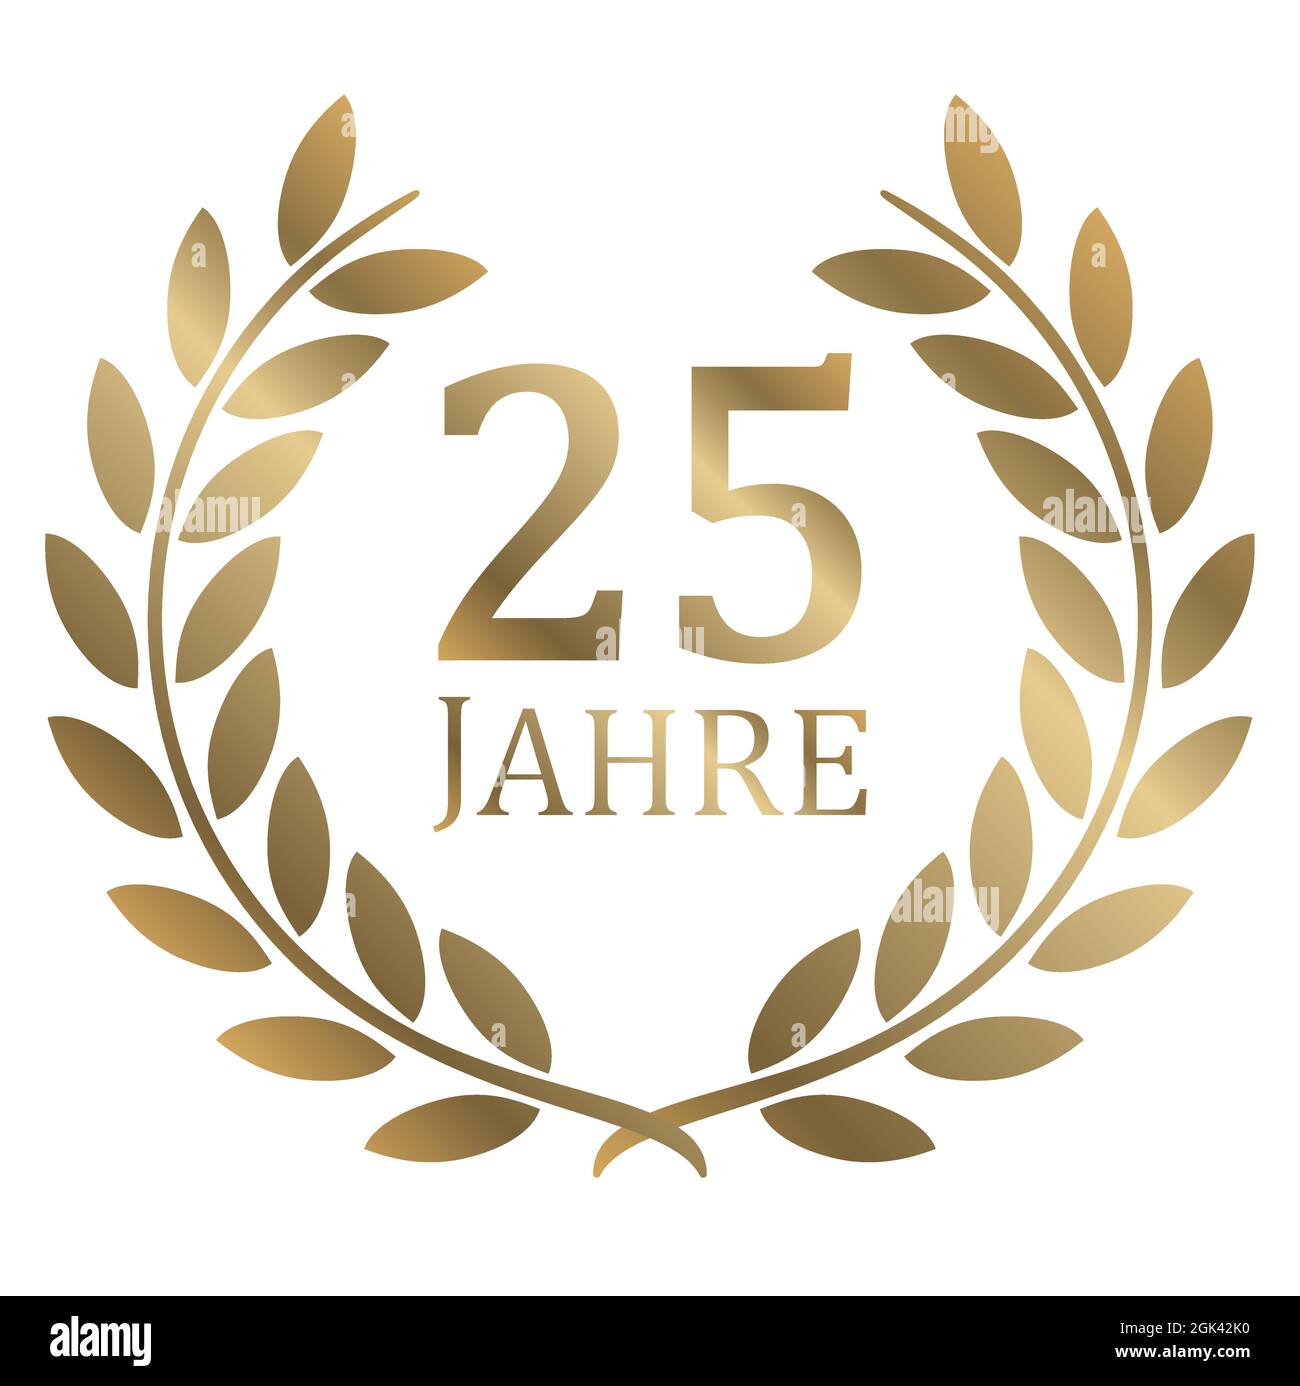 fichier vectoriel eps avec couronne dorée sur fond blanc pour le succès ou le jubilé ferme avec texte 25 ans (texte allemand) Illustration de Vecteur